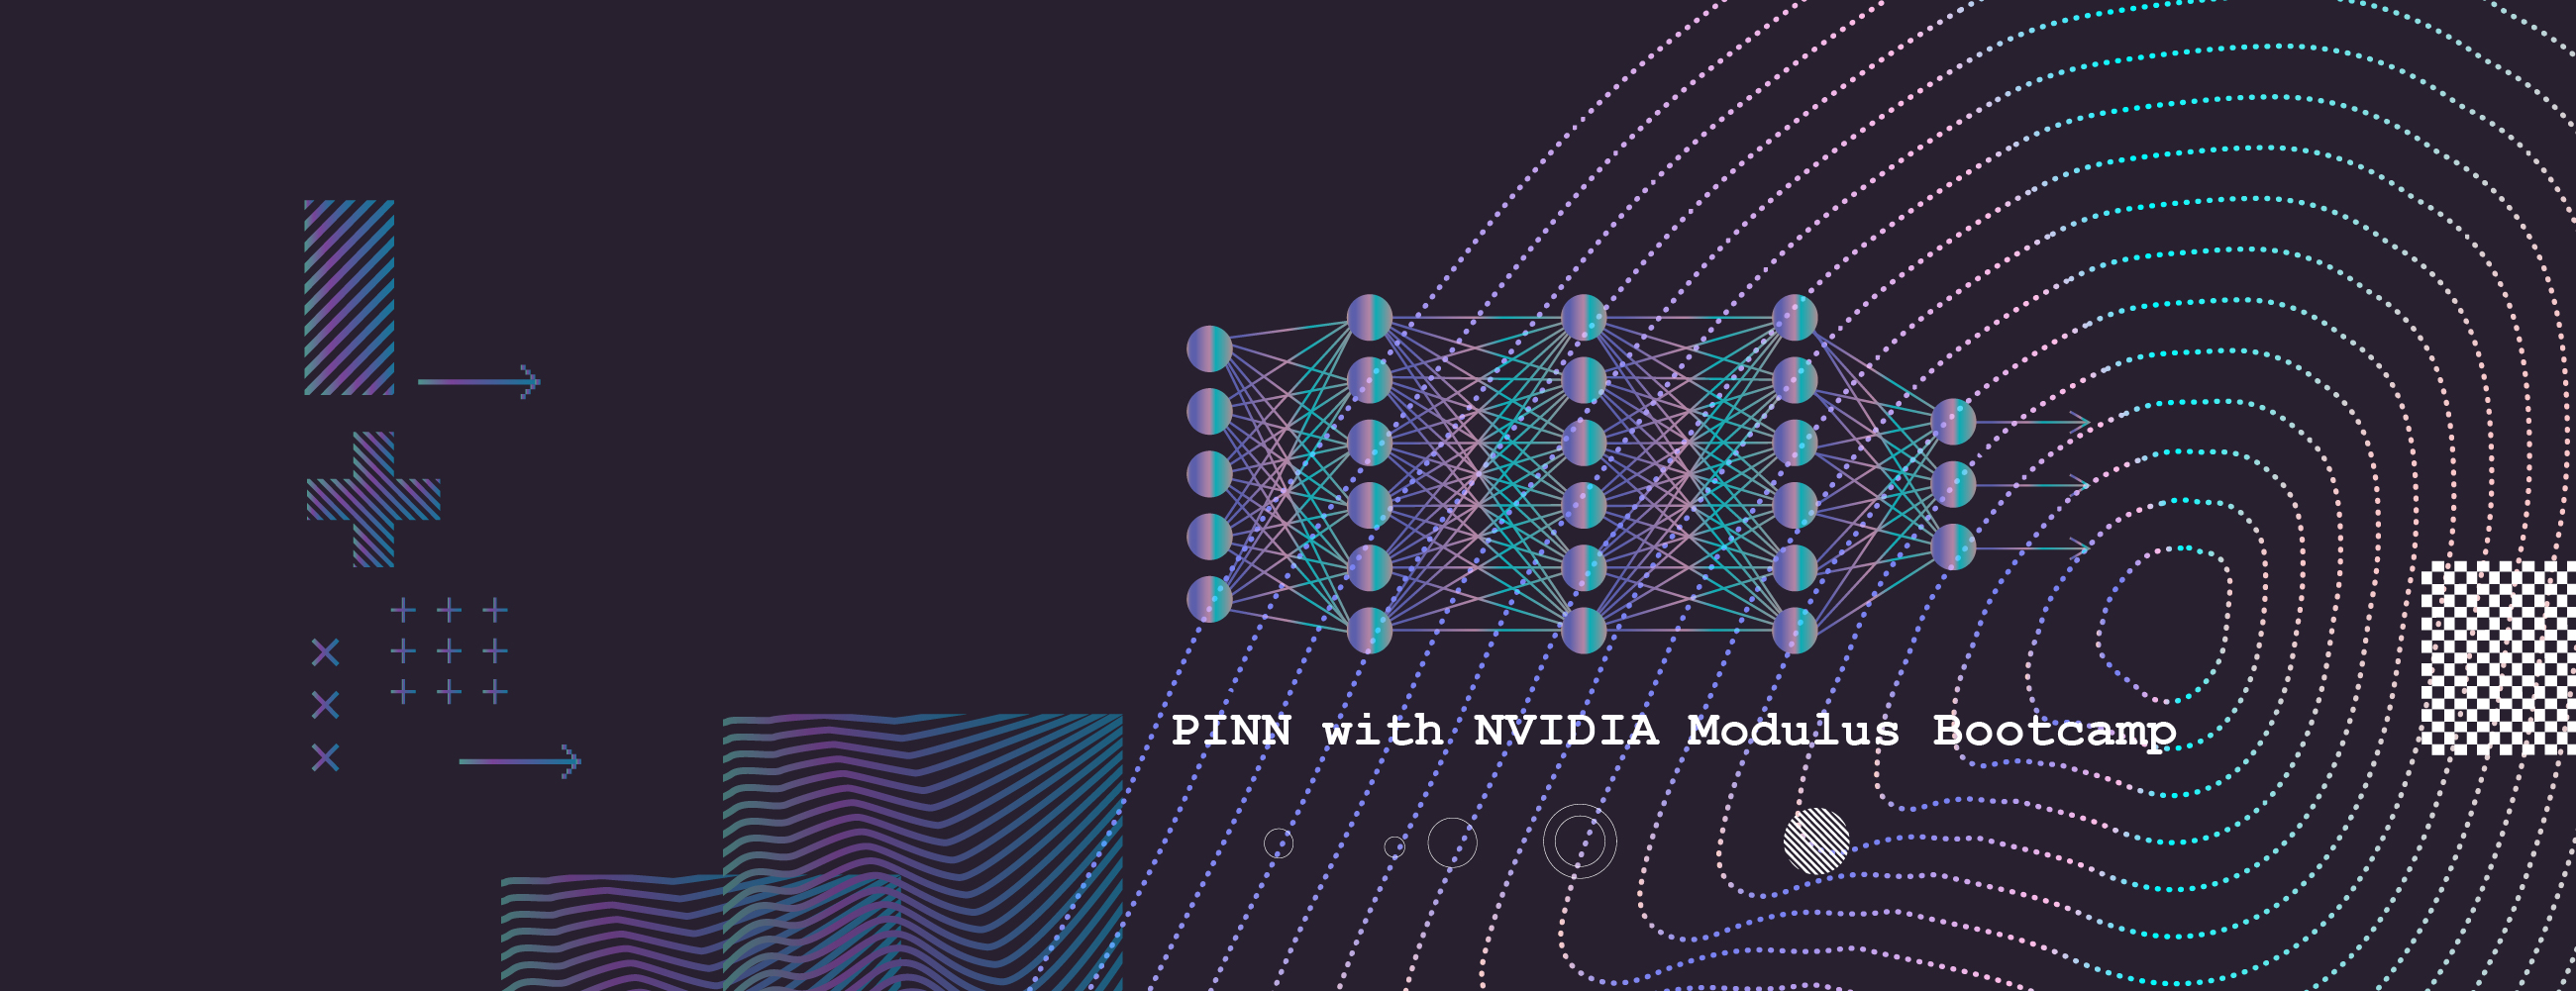 PINN with NVIDIA Modulus Bootcamp